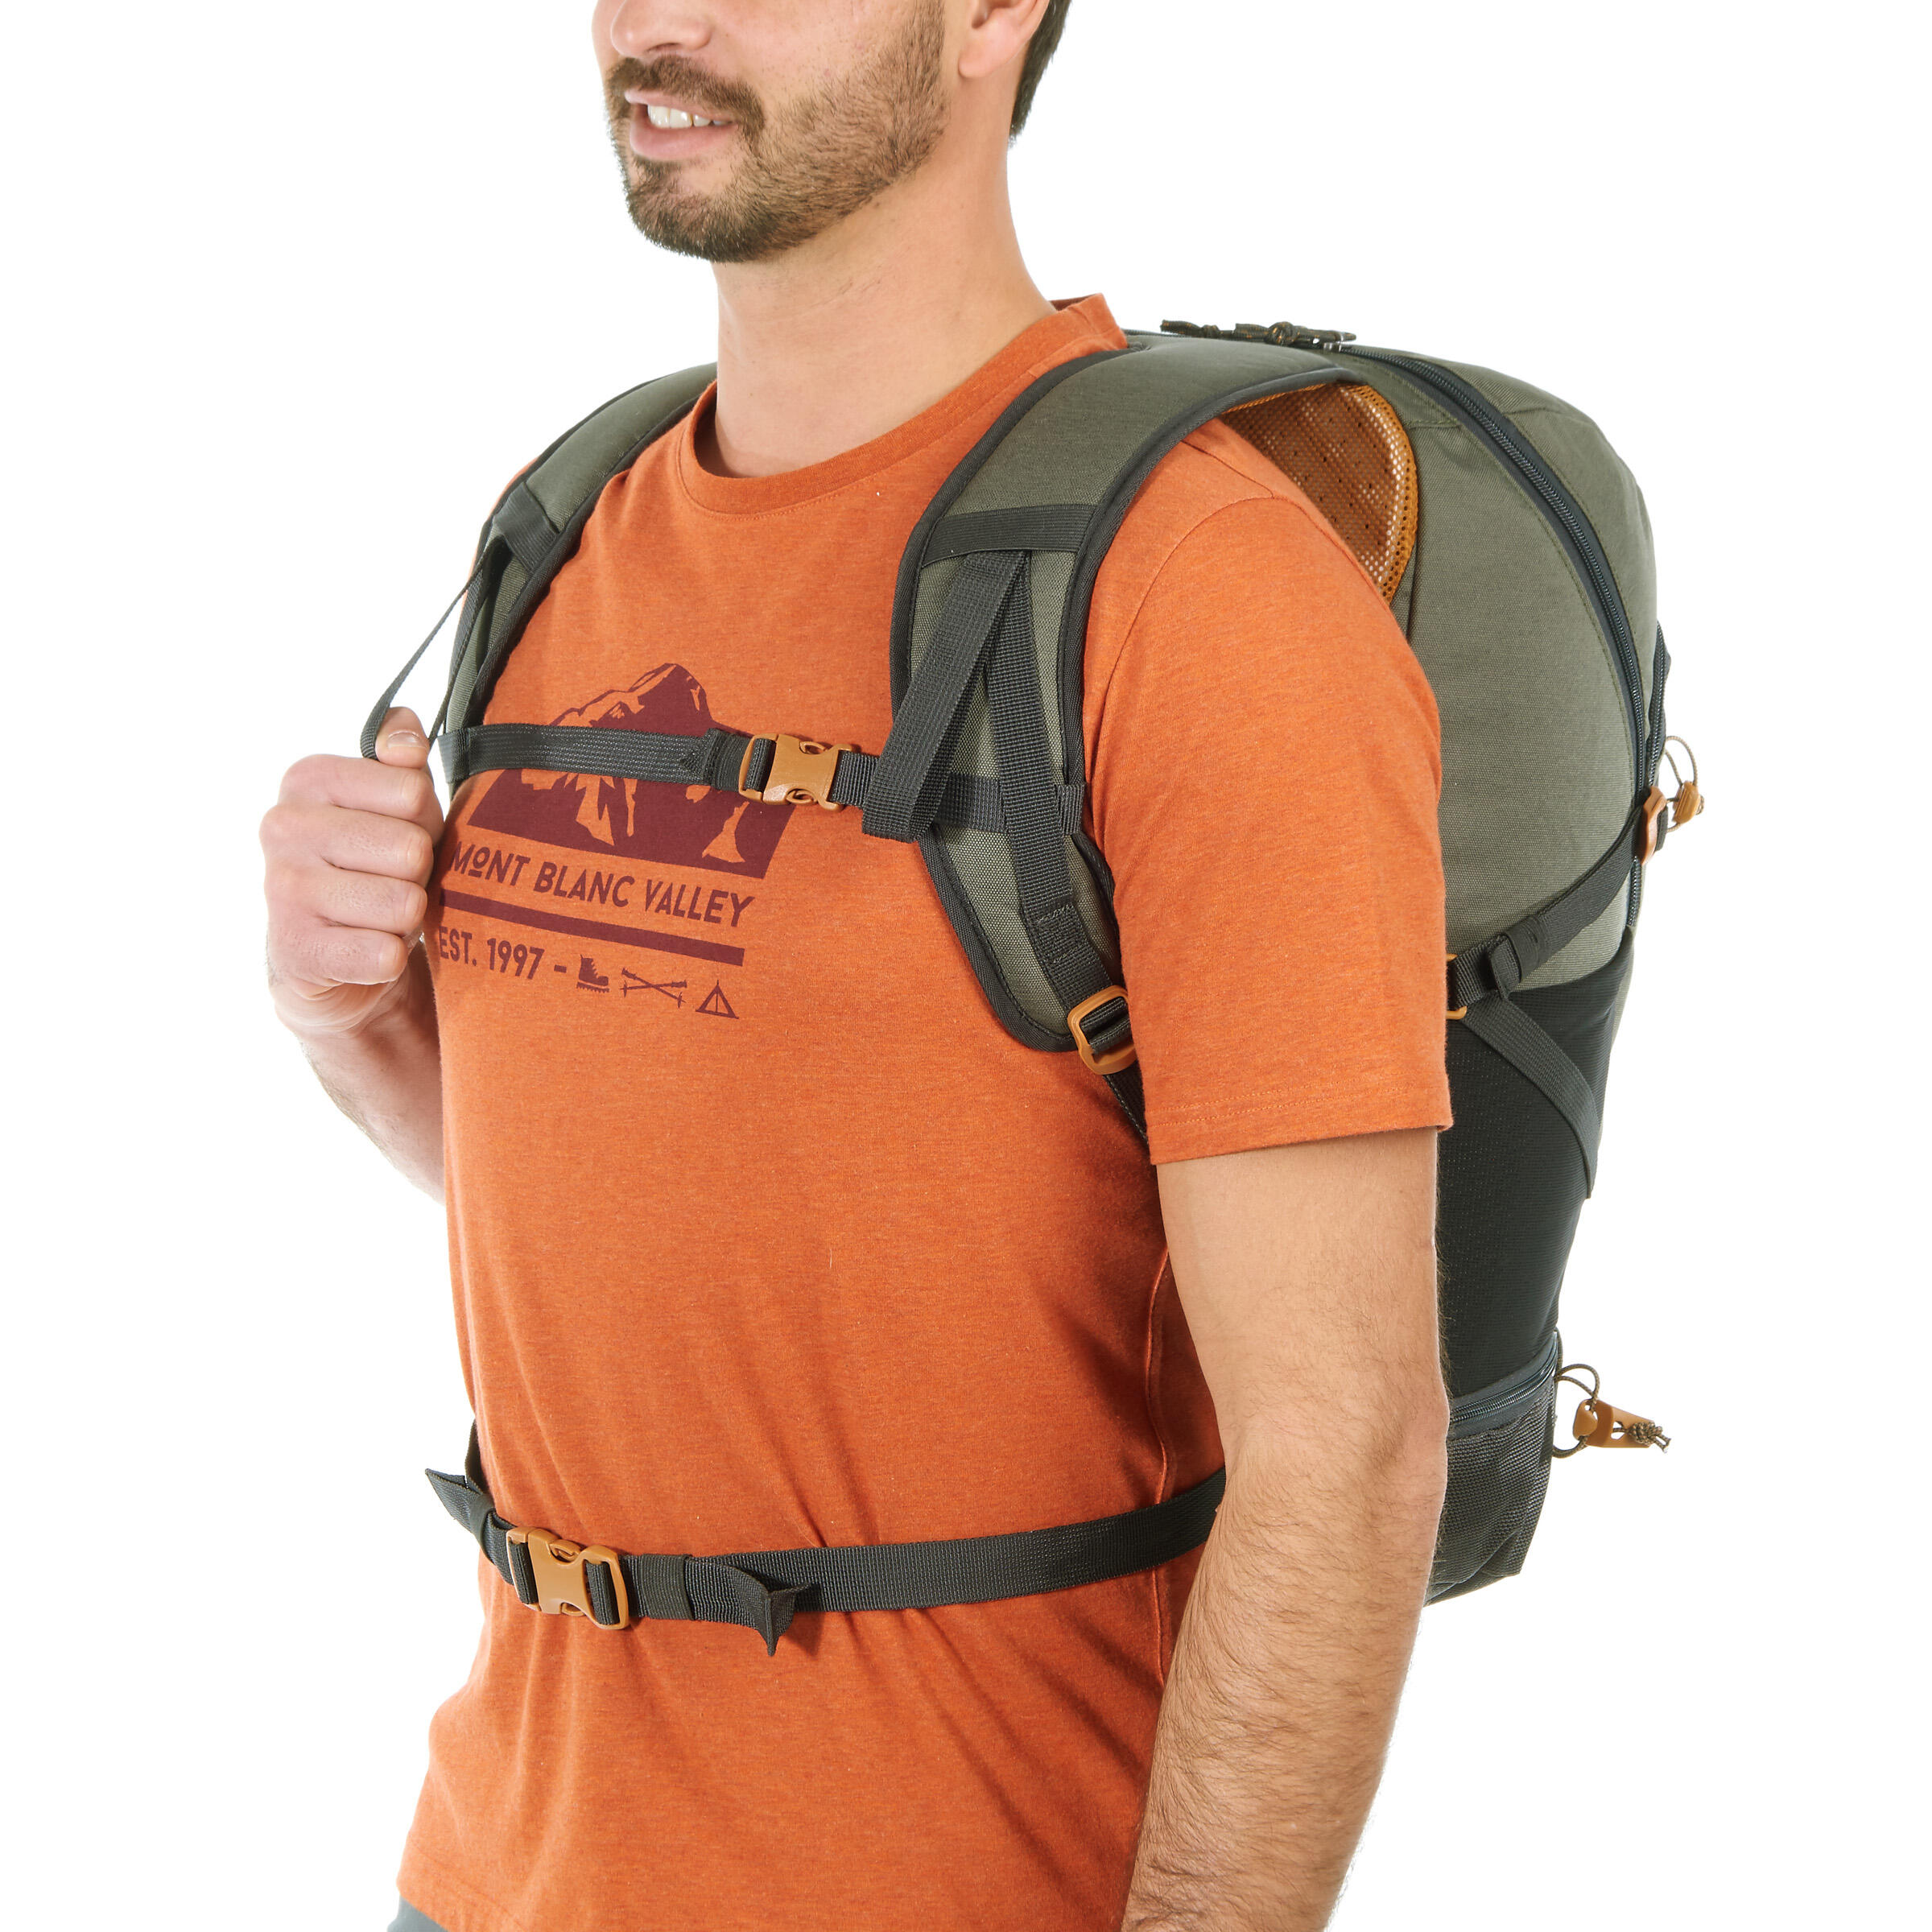 nh500 30l hiking backpack